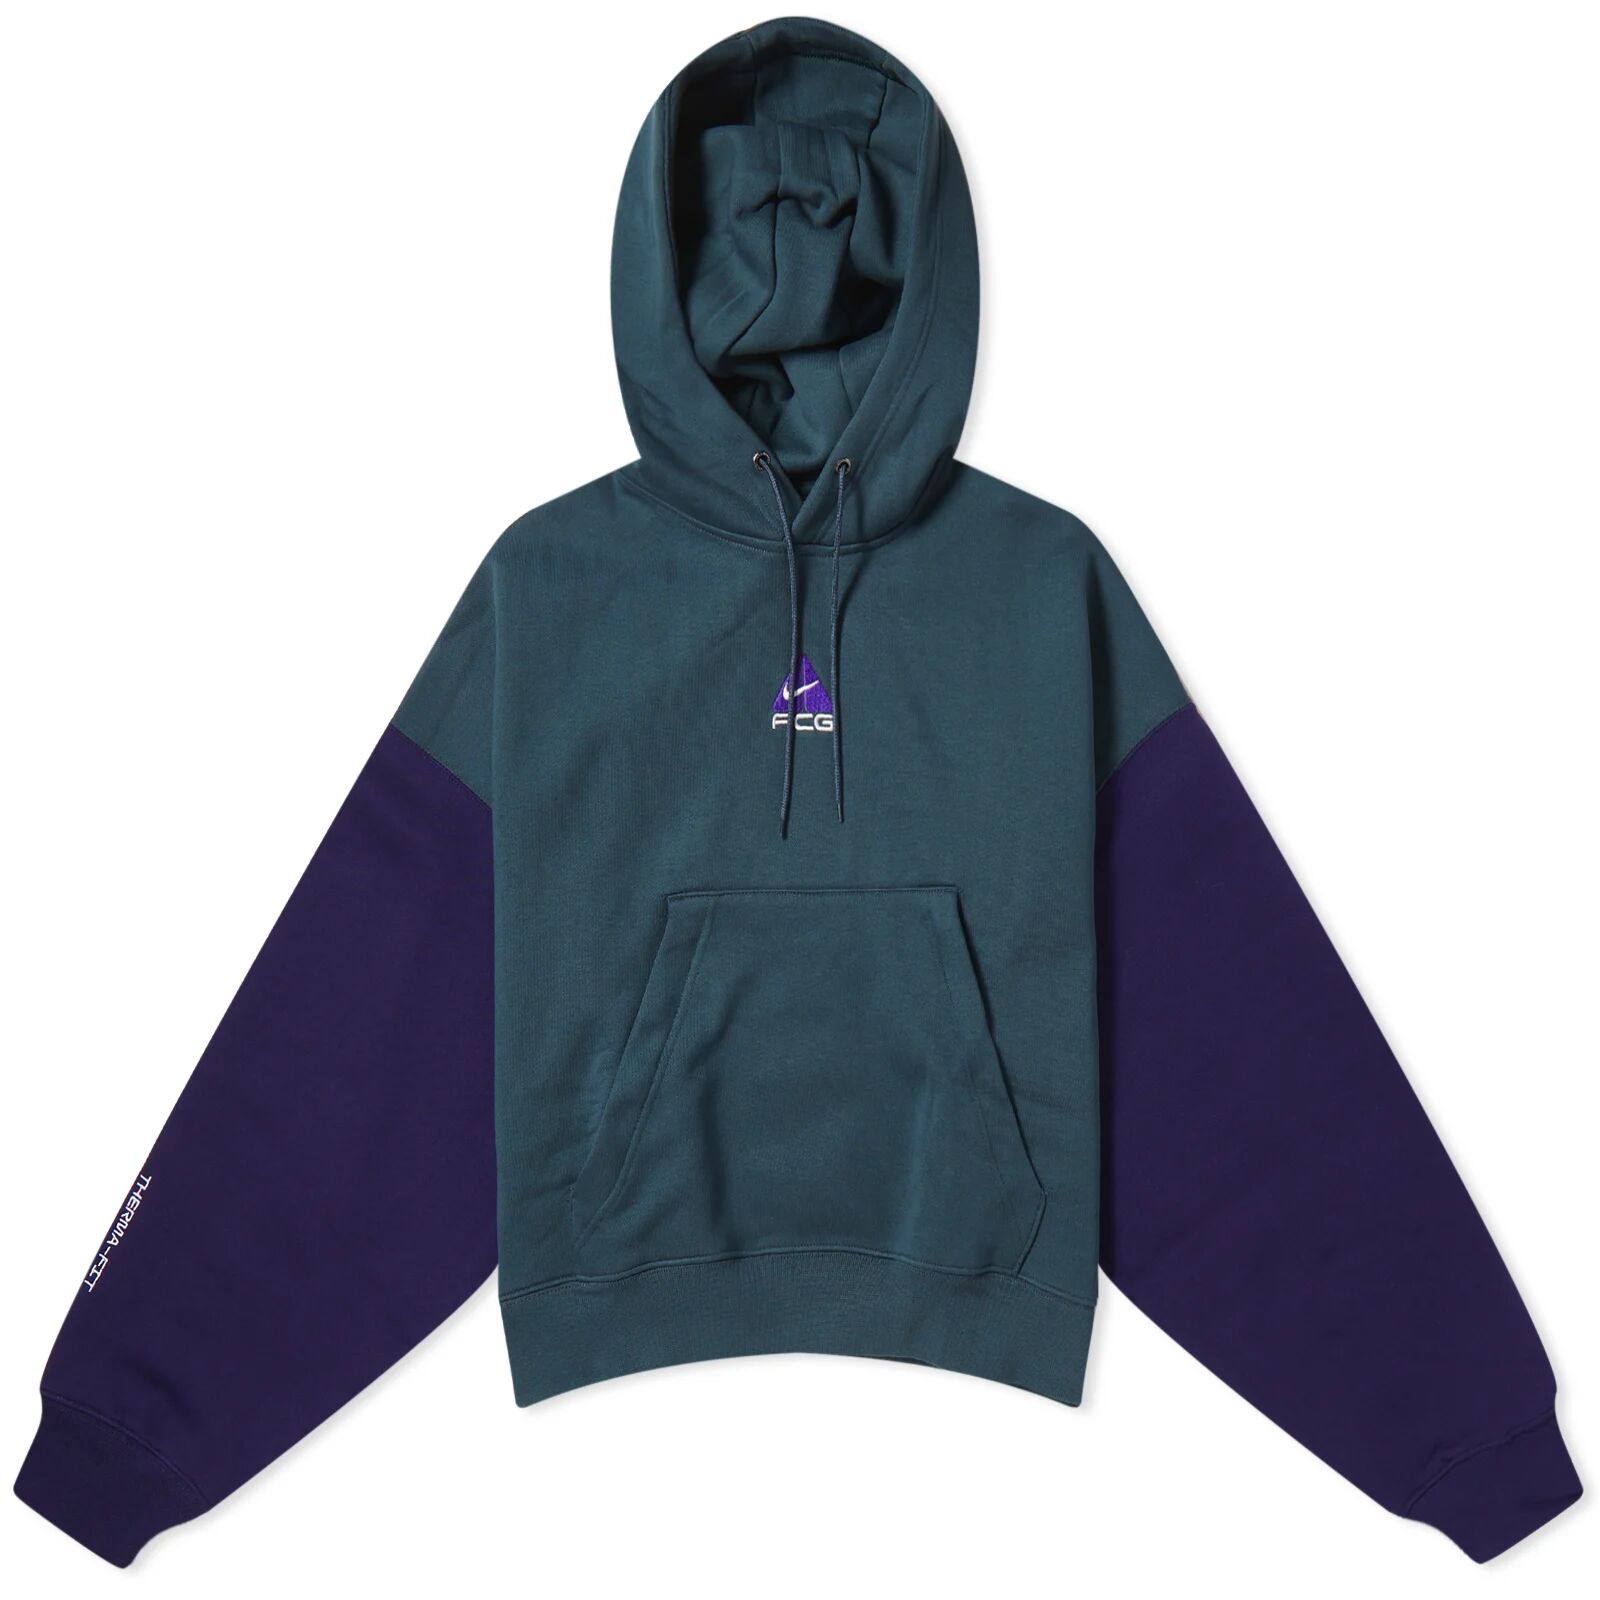 Nike Women's Acg Tuff Knit Fleece Hoodie in Deep Jungle/Purple Ink/Summit White, Size Large